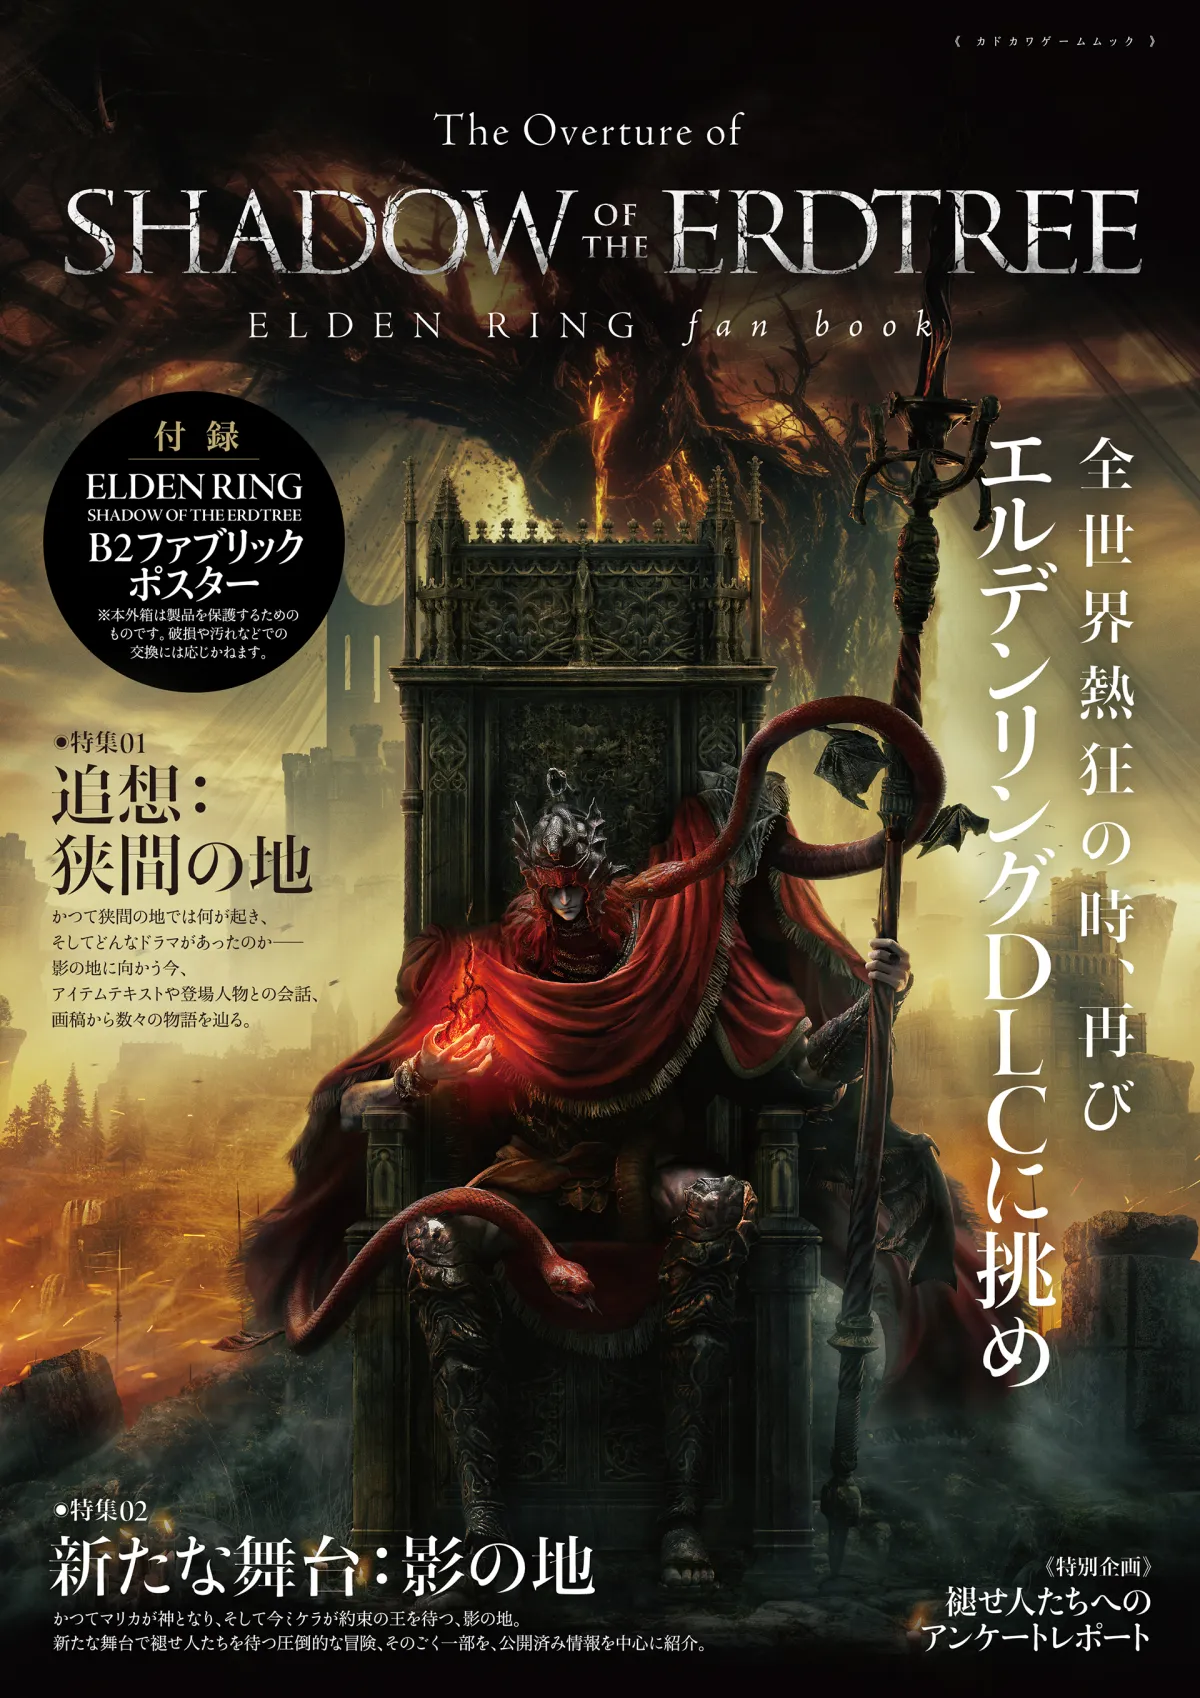 「ELDEN RING」DLC「SHADOW OF THE ERDTREE」関連情報がわかるムック本が6月17日発売本編で描かれた設定も総まとめ。付録はB2ファブリックポスター